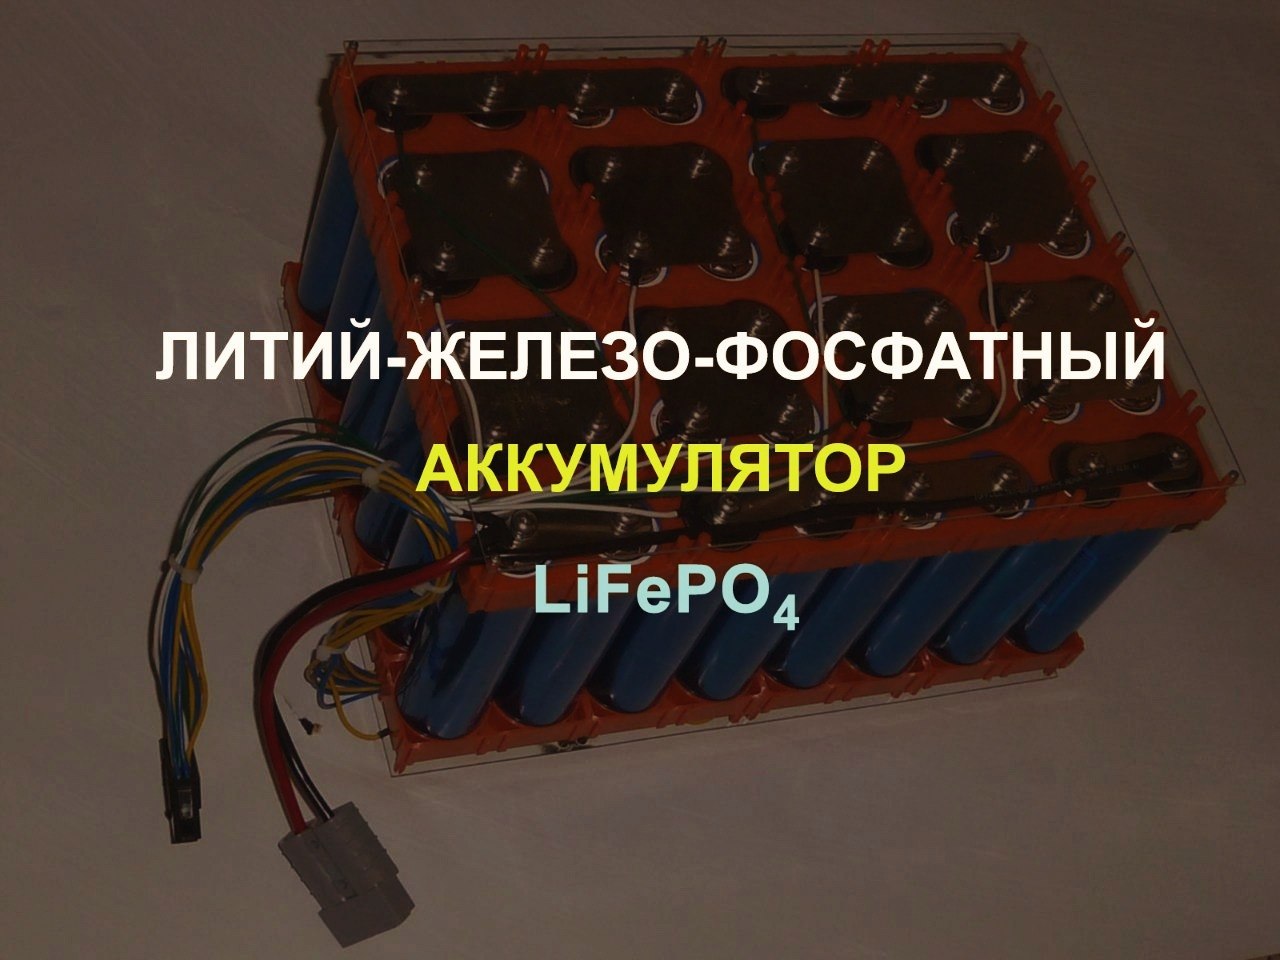 Литий-железо-фосфатный аккумулятор